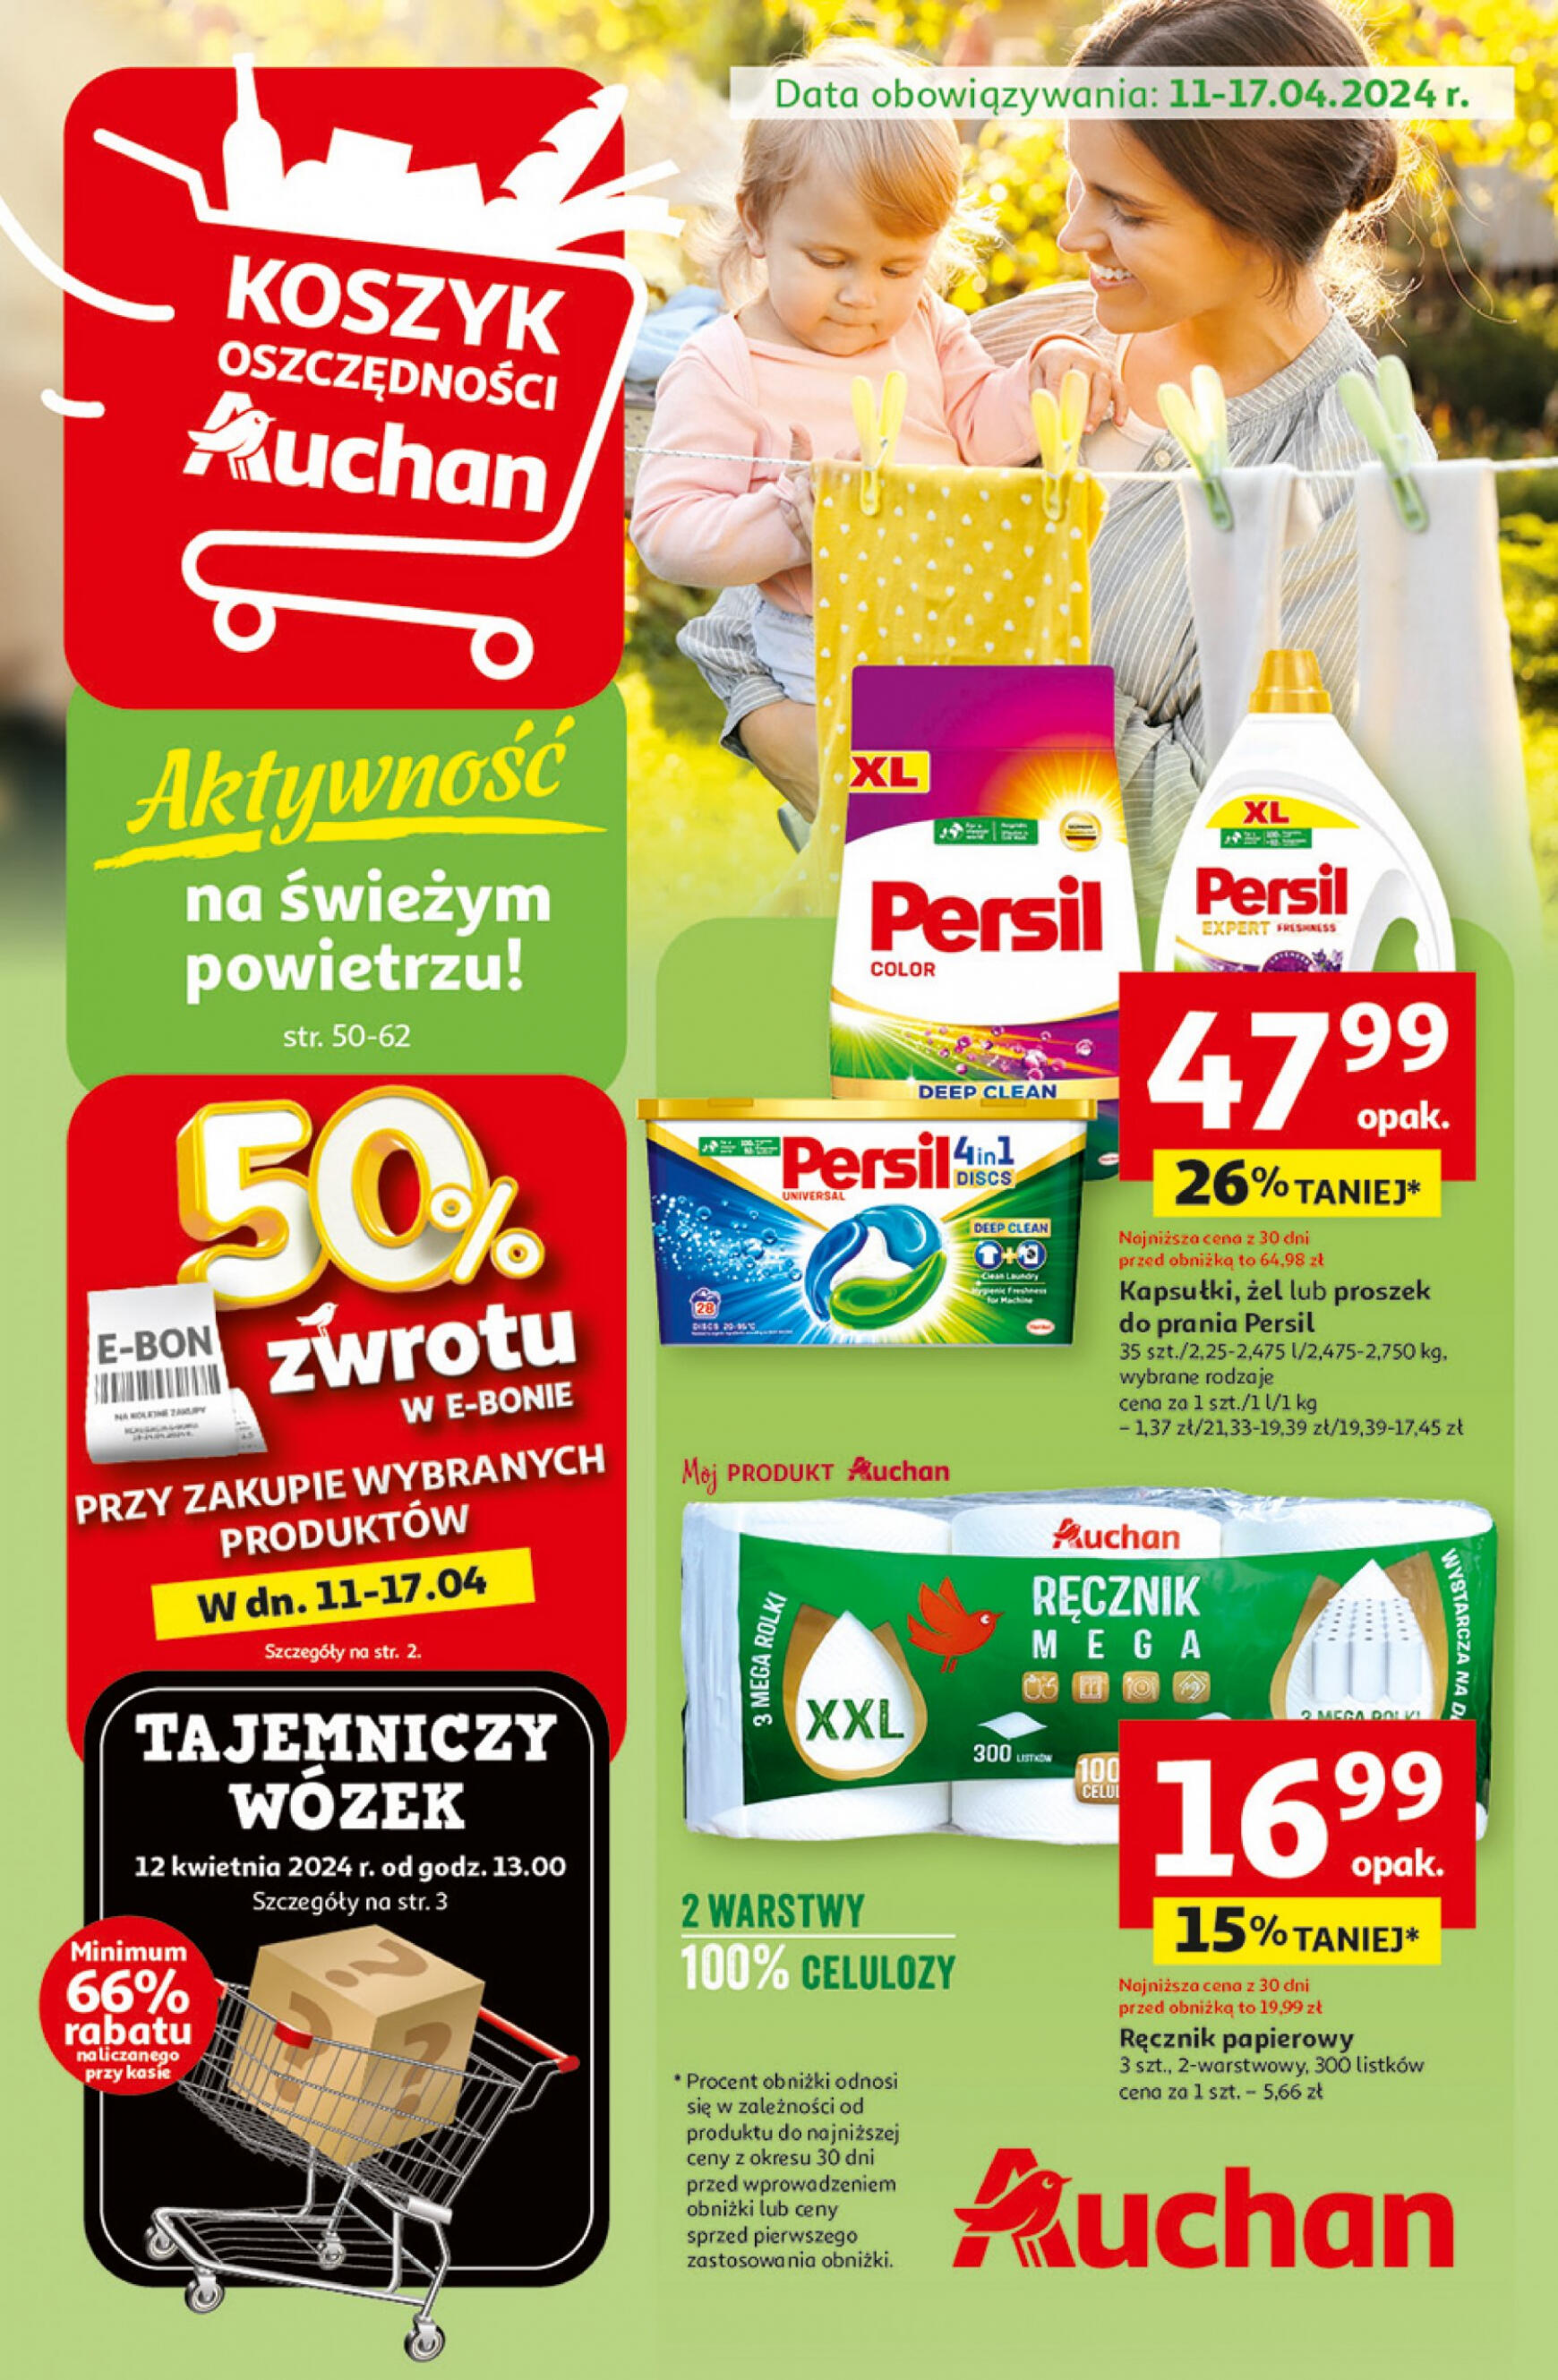 auchan - Hipermarket Auchan - Gazetka Aktywność na świeżym powietrzu! gazetka aktualna ważna od 11.04. - 17.04.